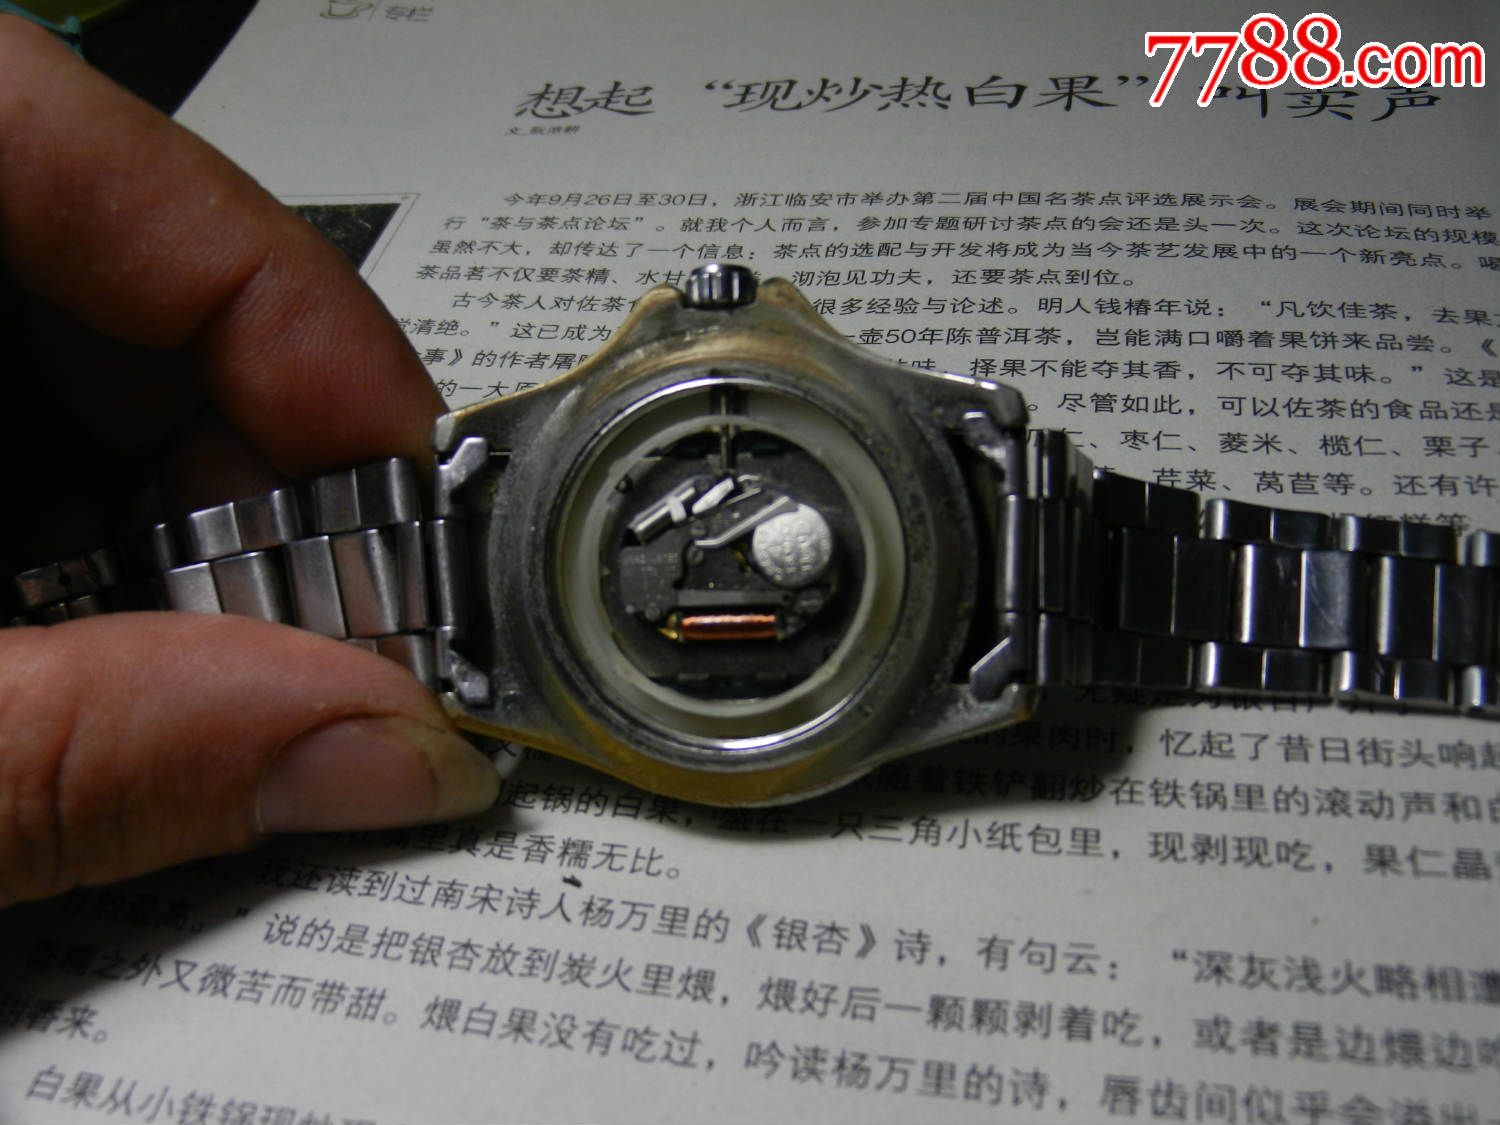 瑞士十字架手表*电子机芯*日本机芯*表壳好像是铜镀?